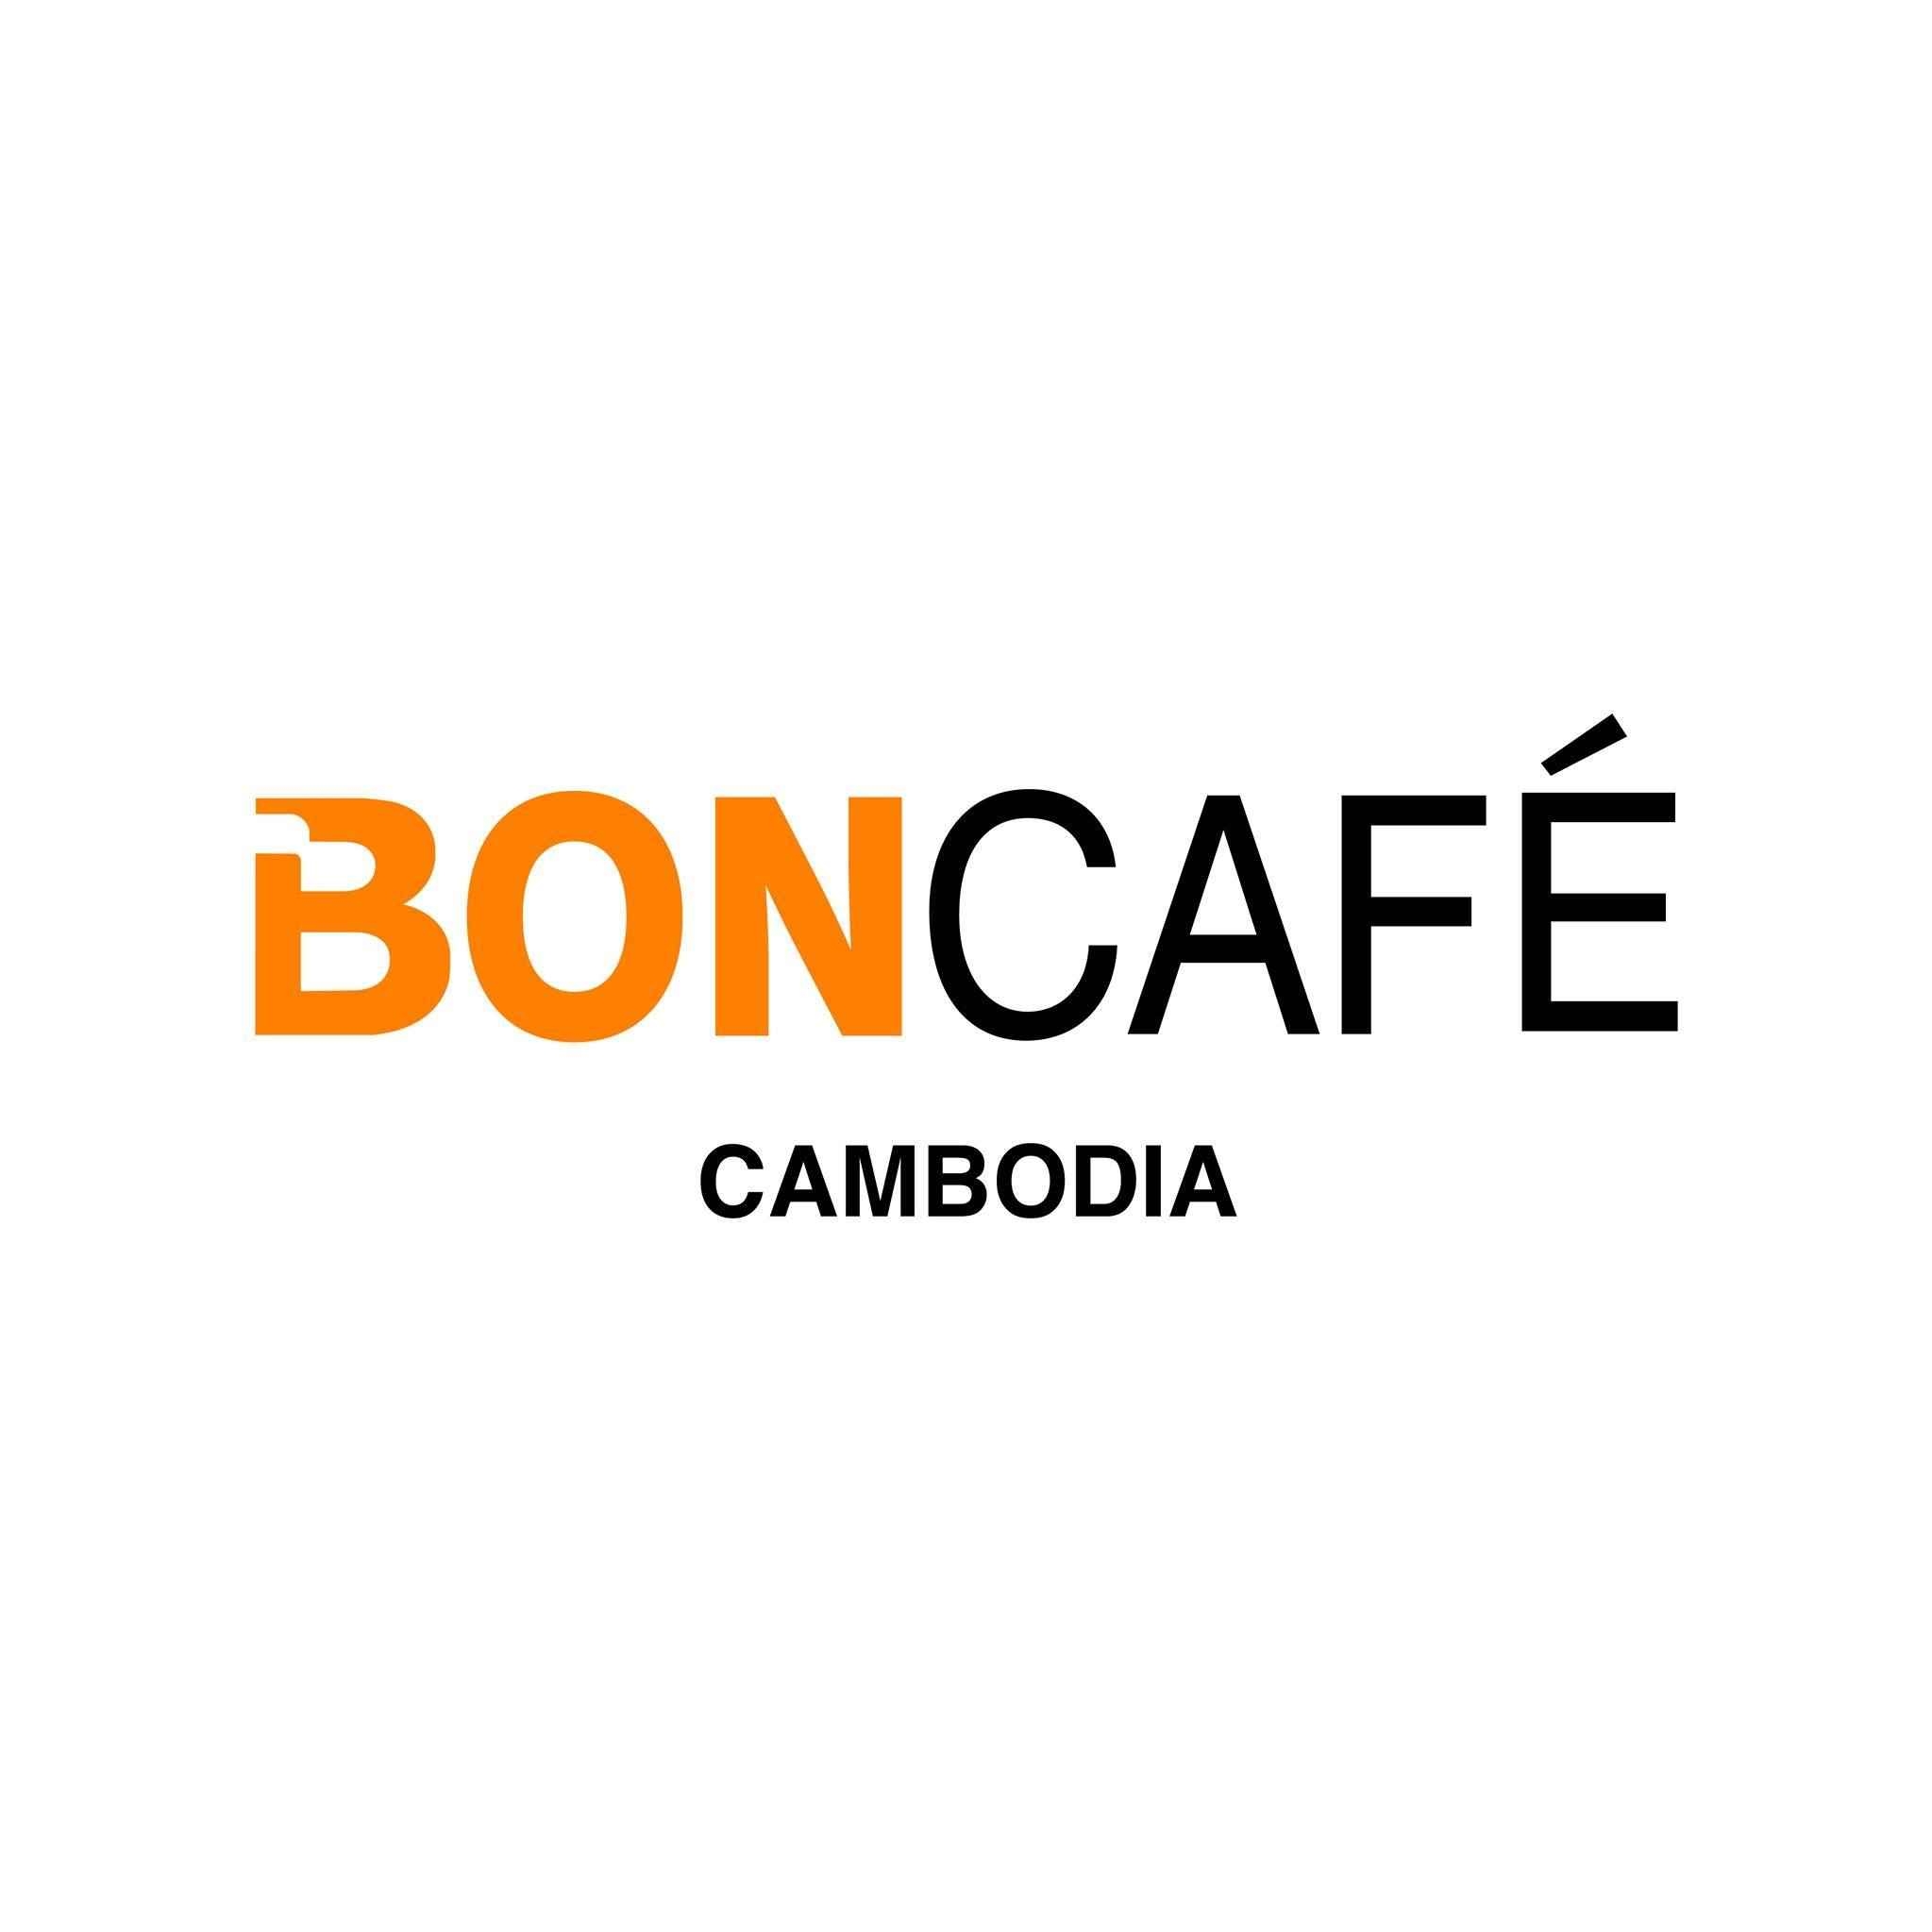 Boncafe Cambodia